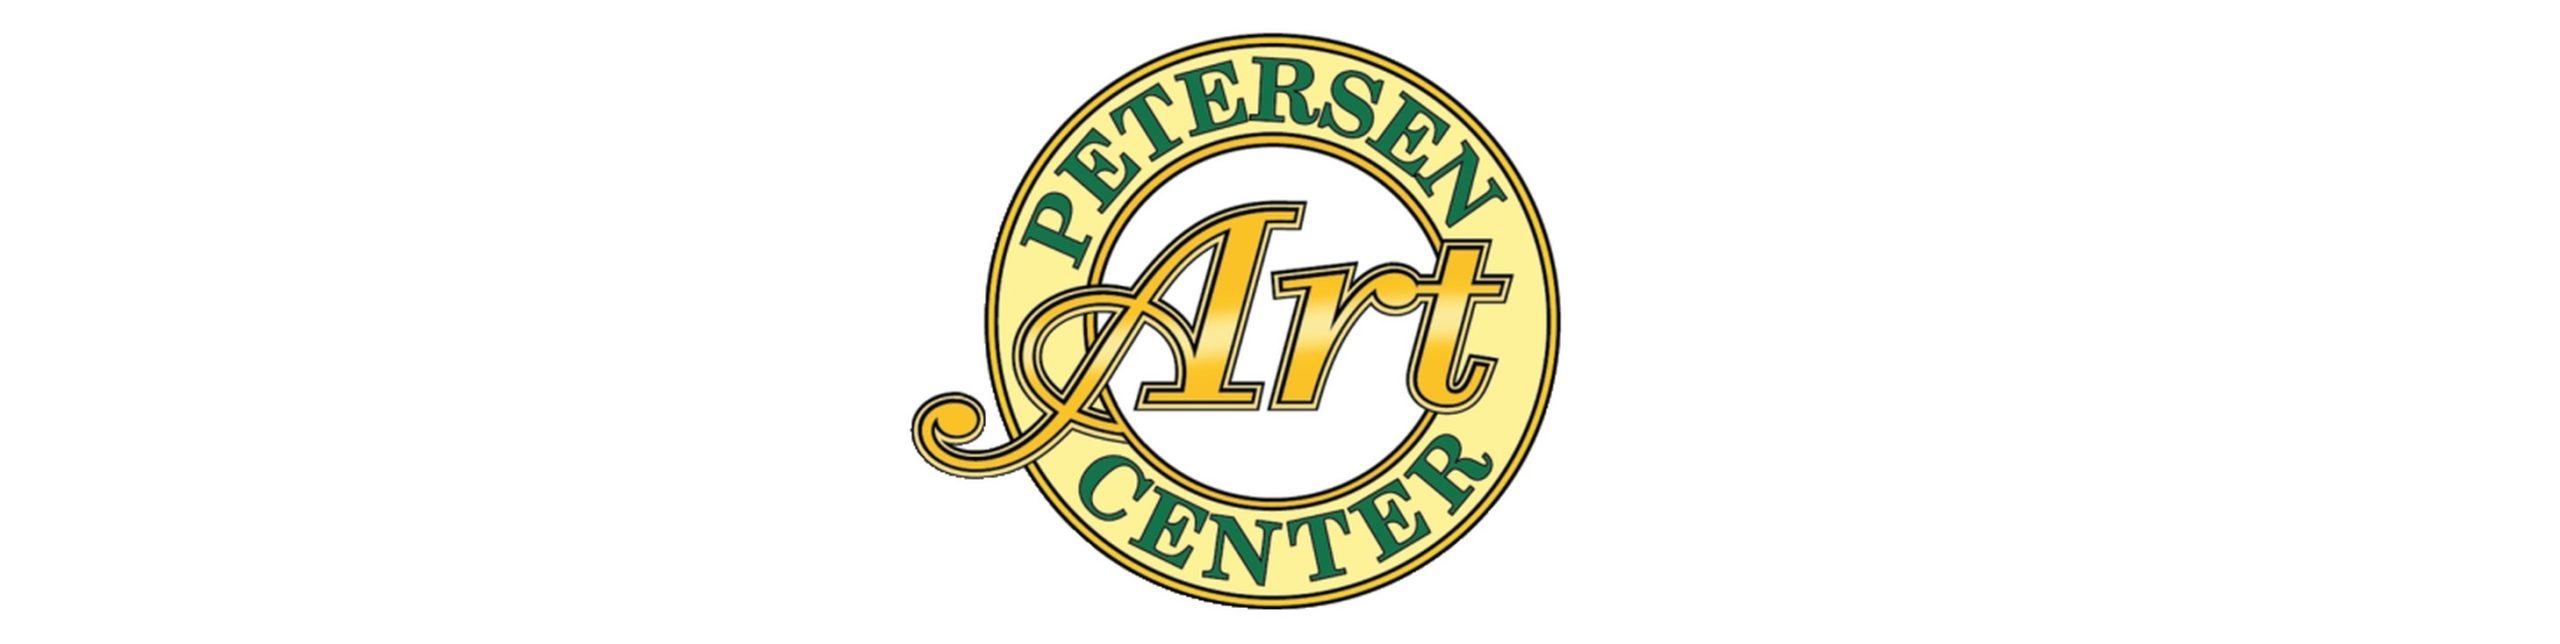 Petersen Art Center